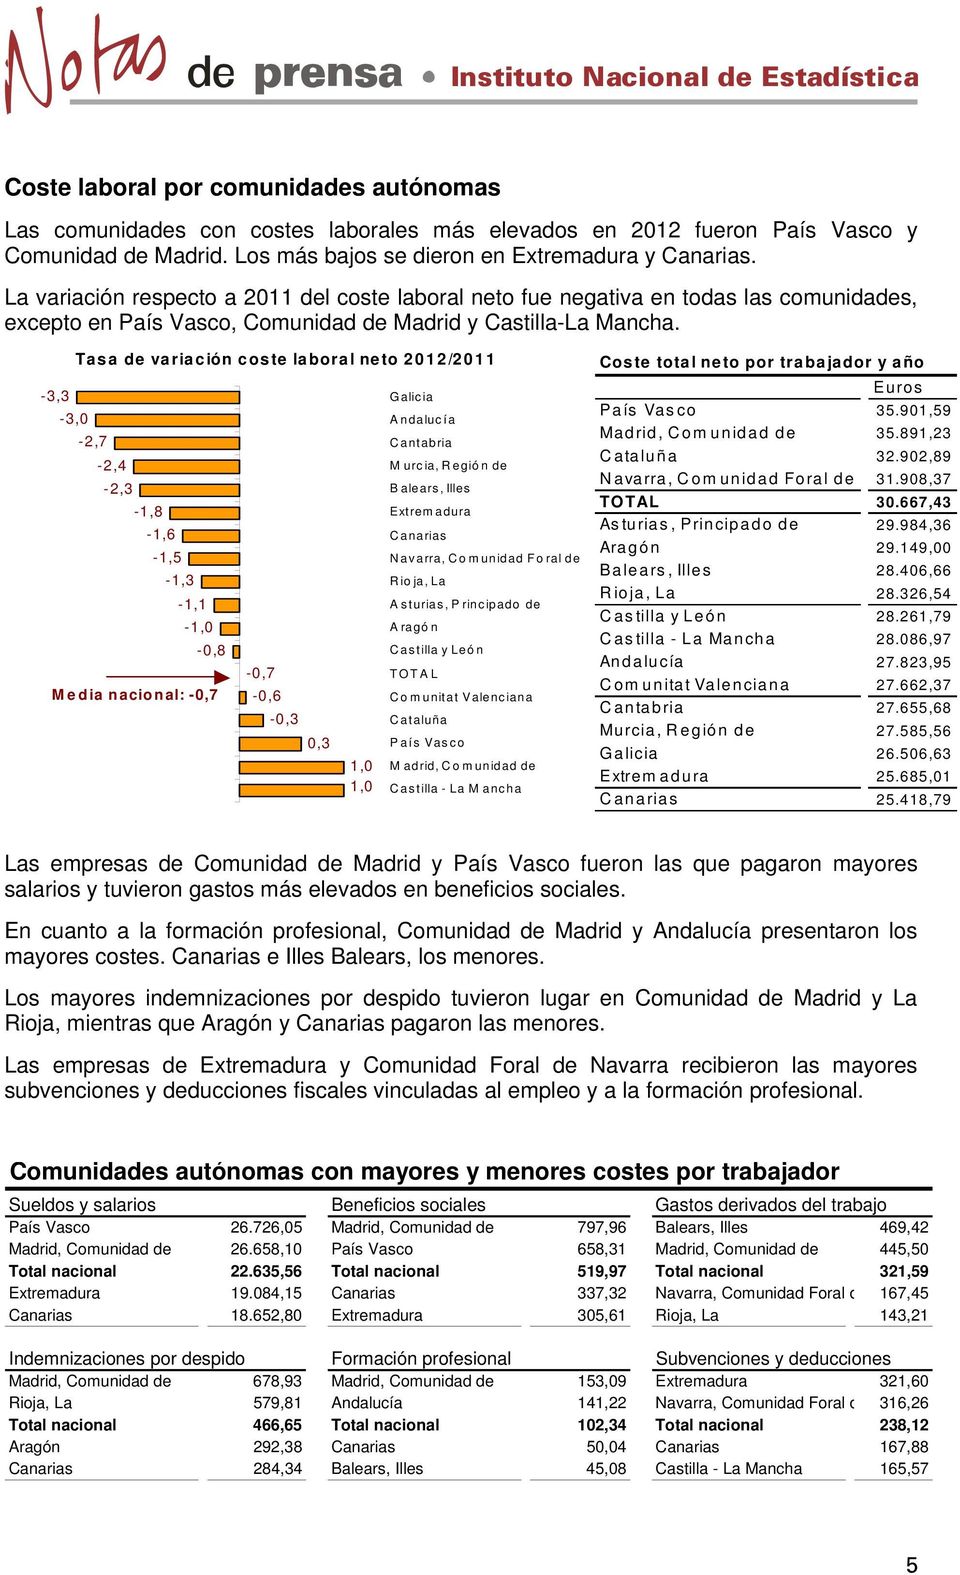 -3,3-3,0 Tasa de variación coste laboral neto 2012/2011-2,7-2,4-2,3-1,8-1,6-1,5-1,3-1,1-1,0-0,8 M edia nacional: -0,7-0,7-0,6-0,3 0,3 1,0 1,0 Galicia Andalucía Cantabria M urcia, Regió n de B alears,